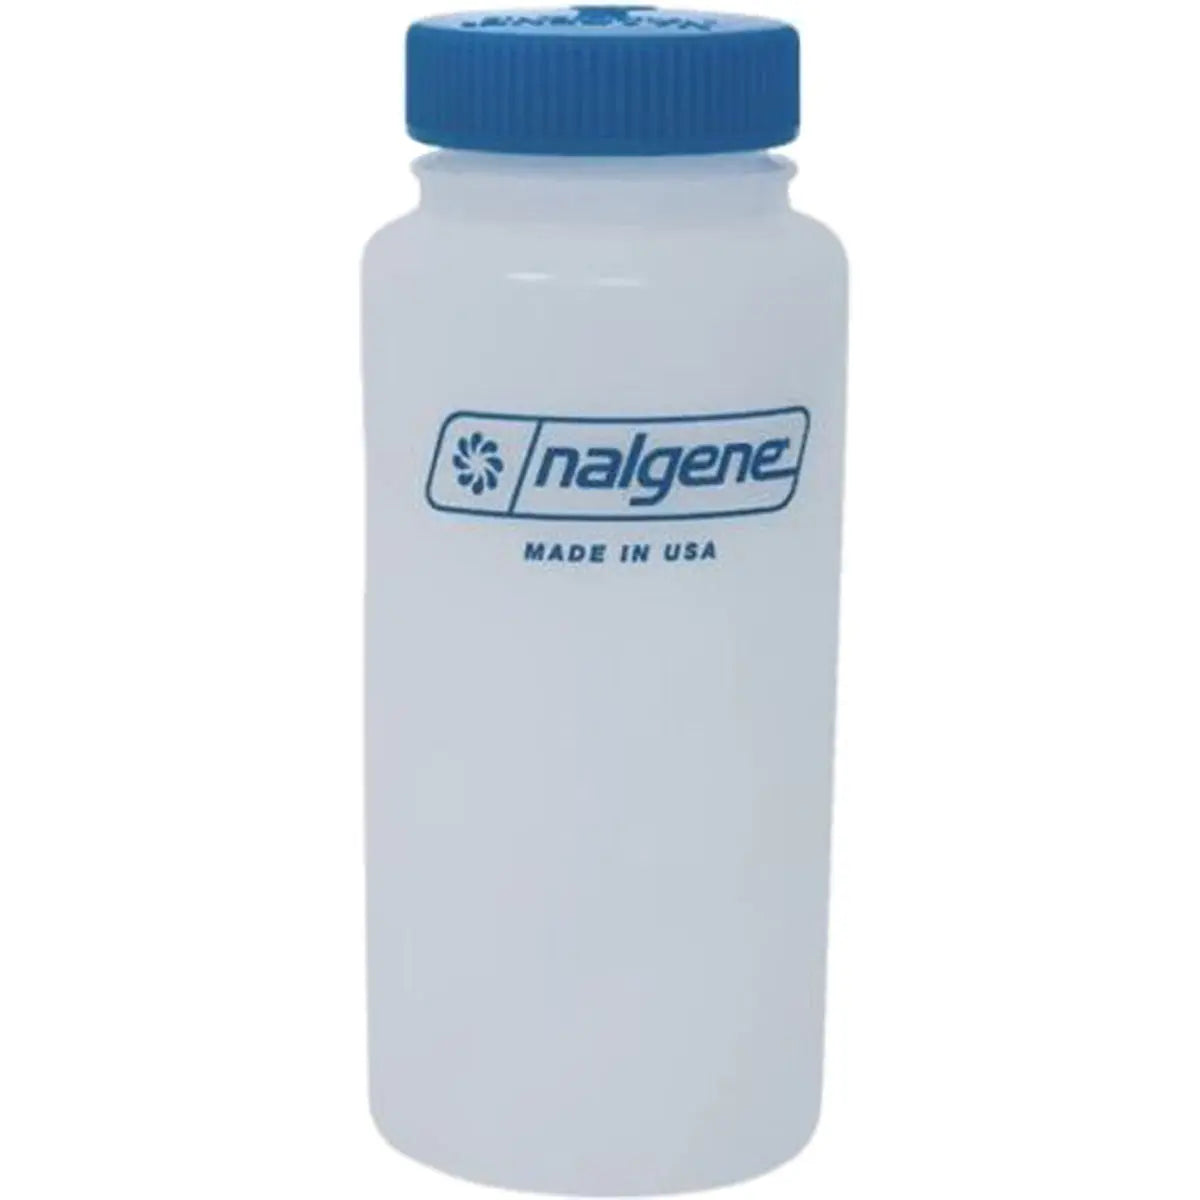 Nalgene HDPE Plastic Wide Mouth Storage Bottle - Clear/Blue Nalgene